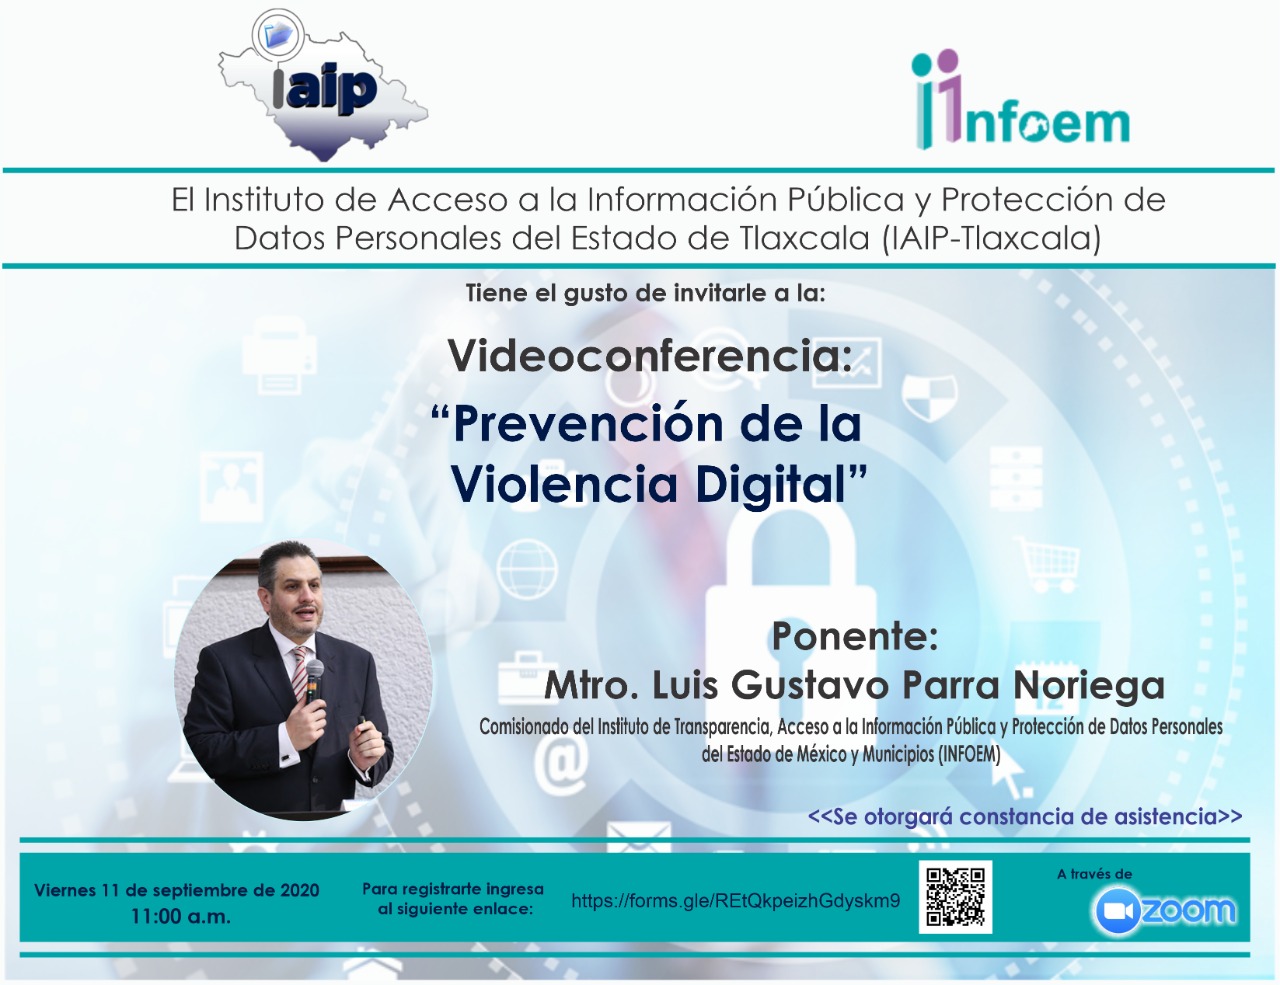 IAIP invita a conferencia sobre “Prevención de Violencia Digital”